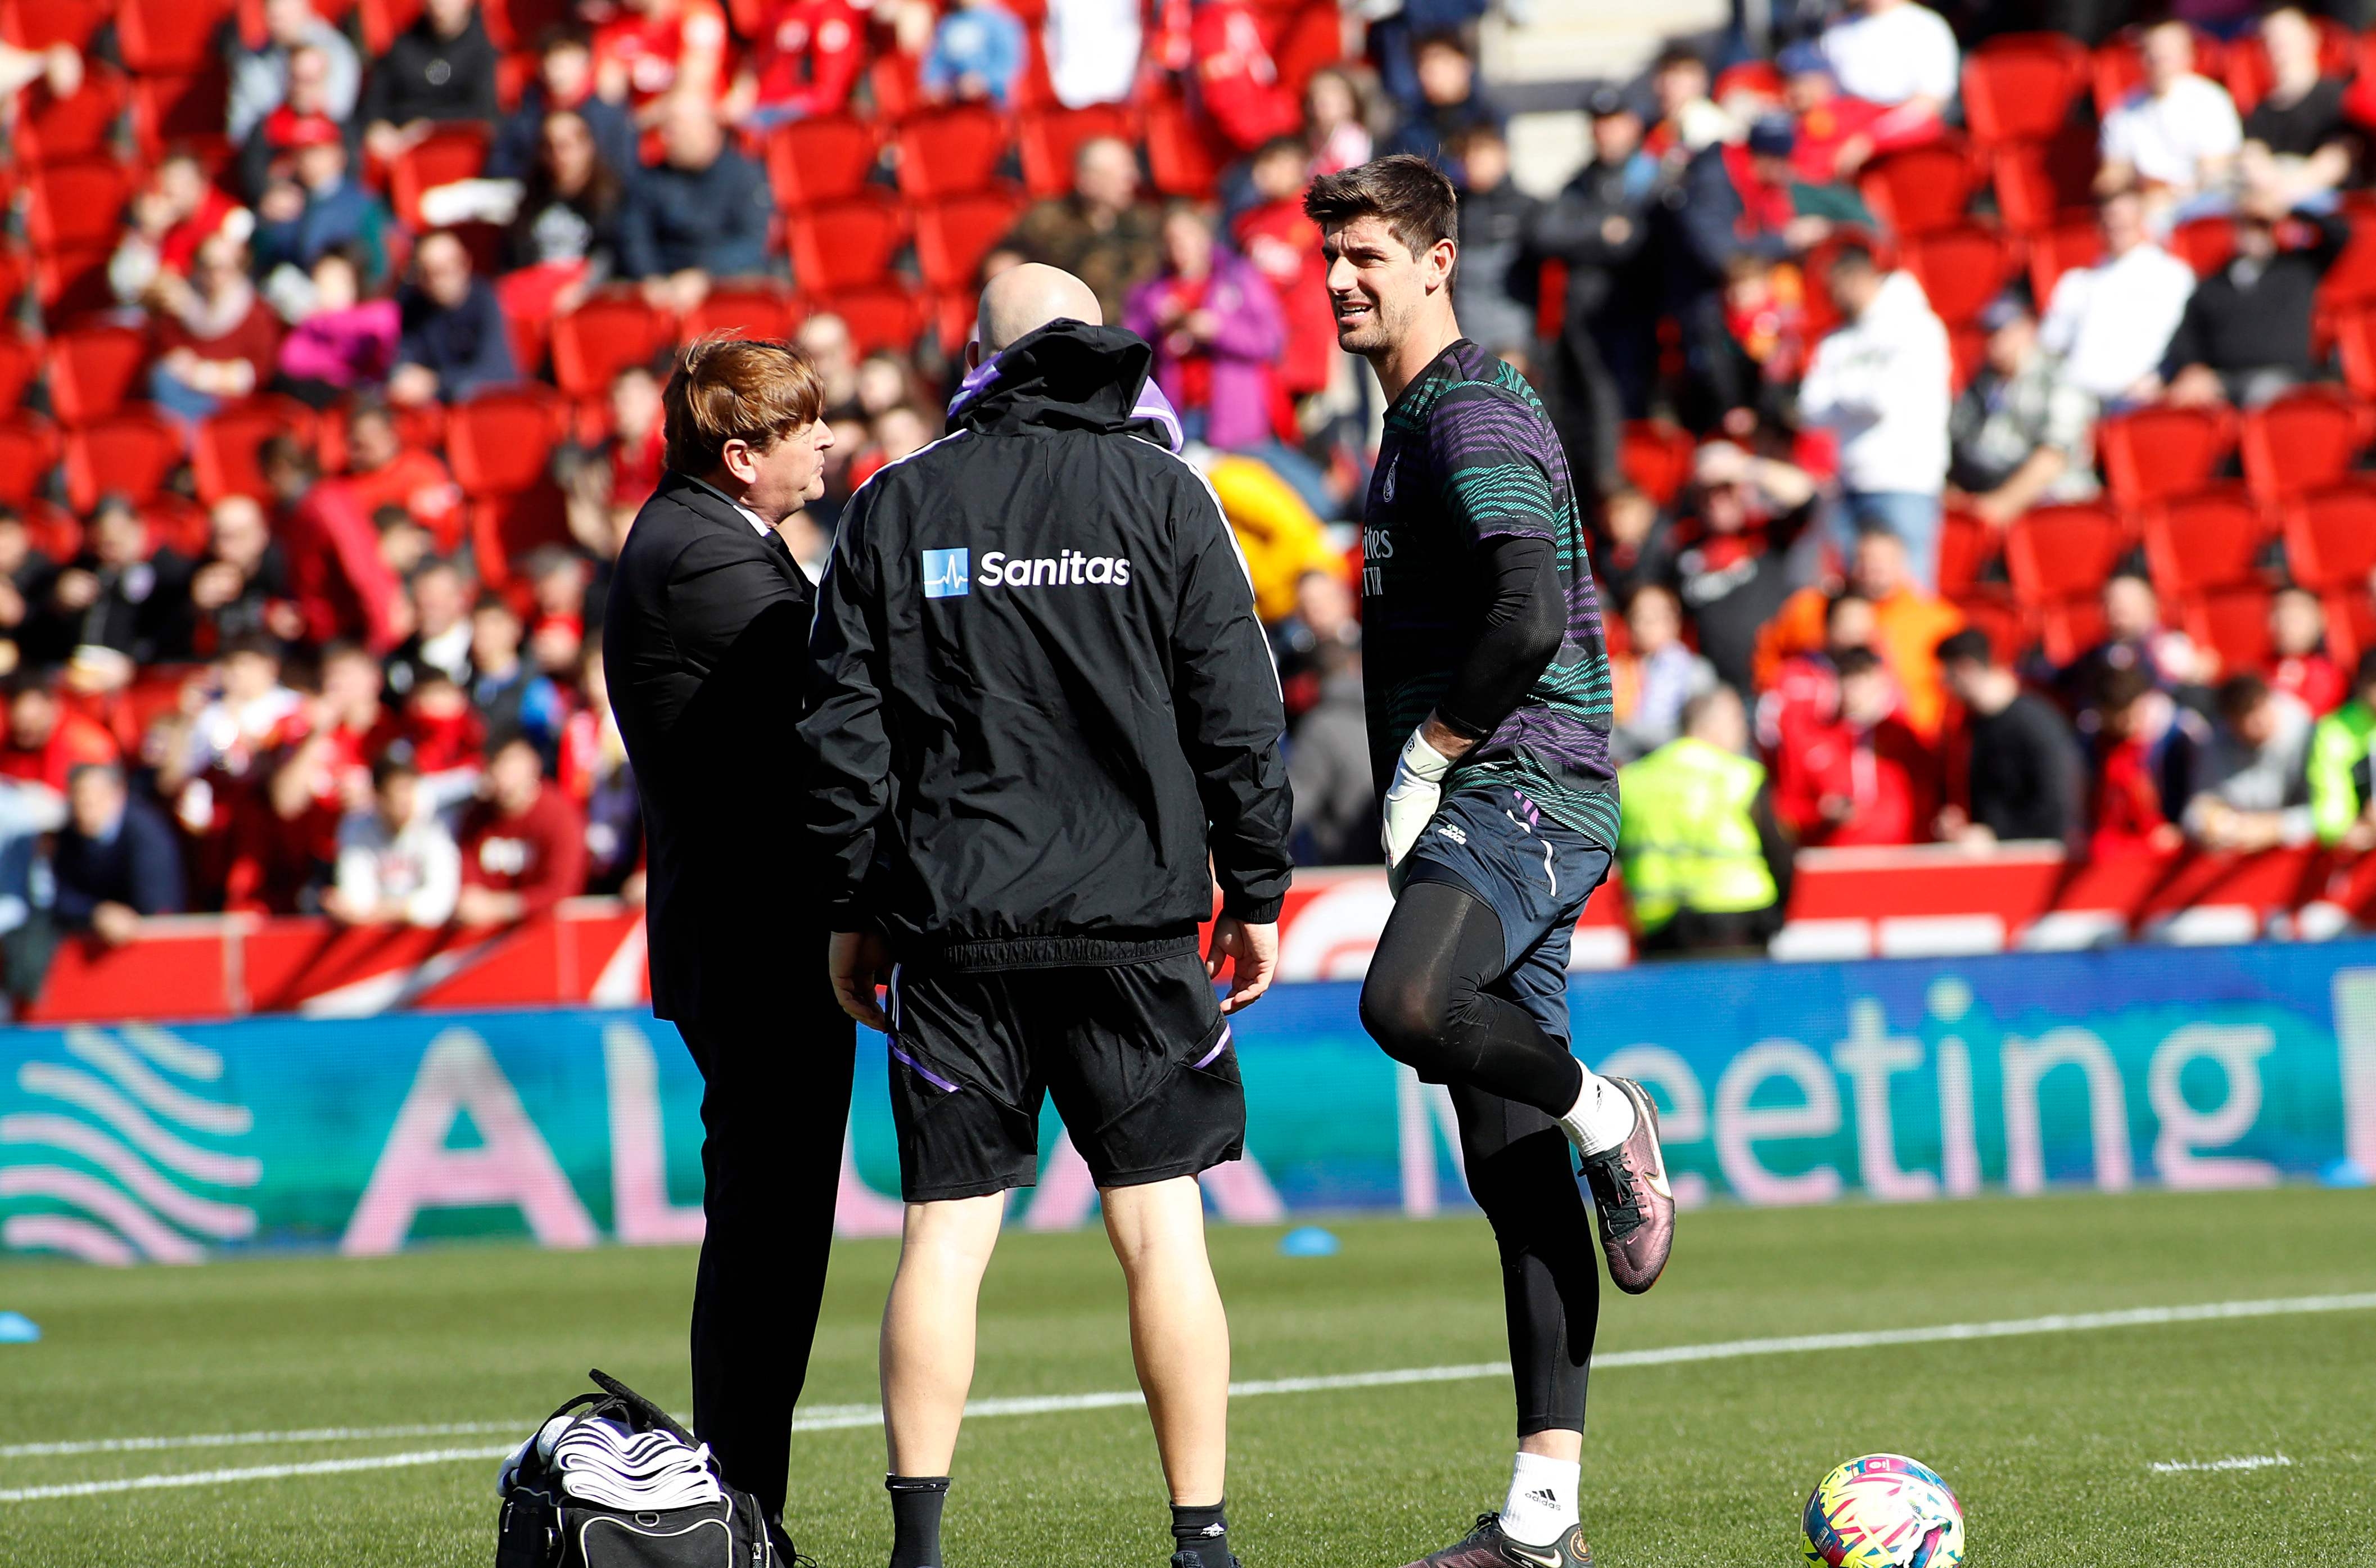 Courtois se lesionó en el calentamiento antes del juego contra el Mallorca. (Foto Prensa Libre: AFP)